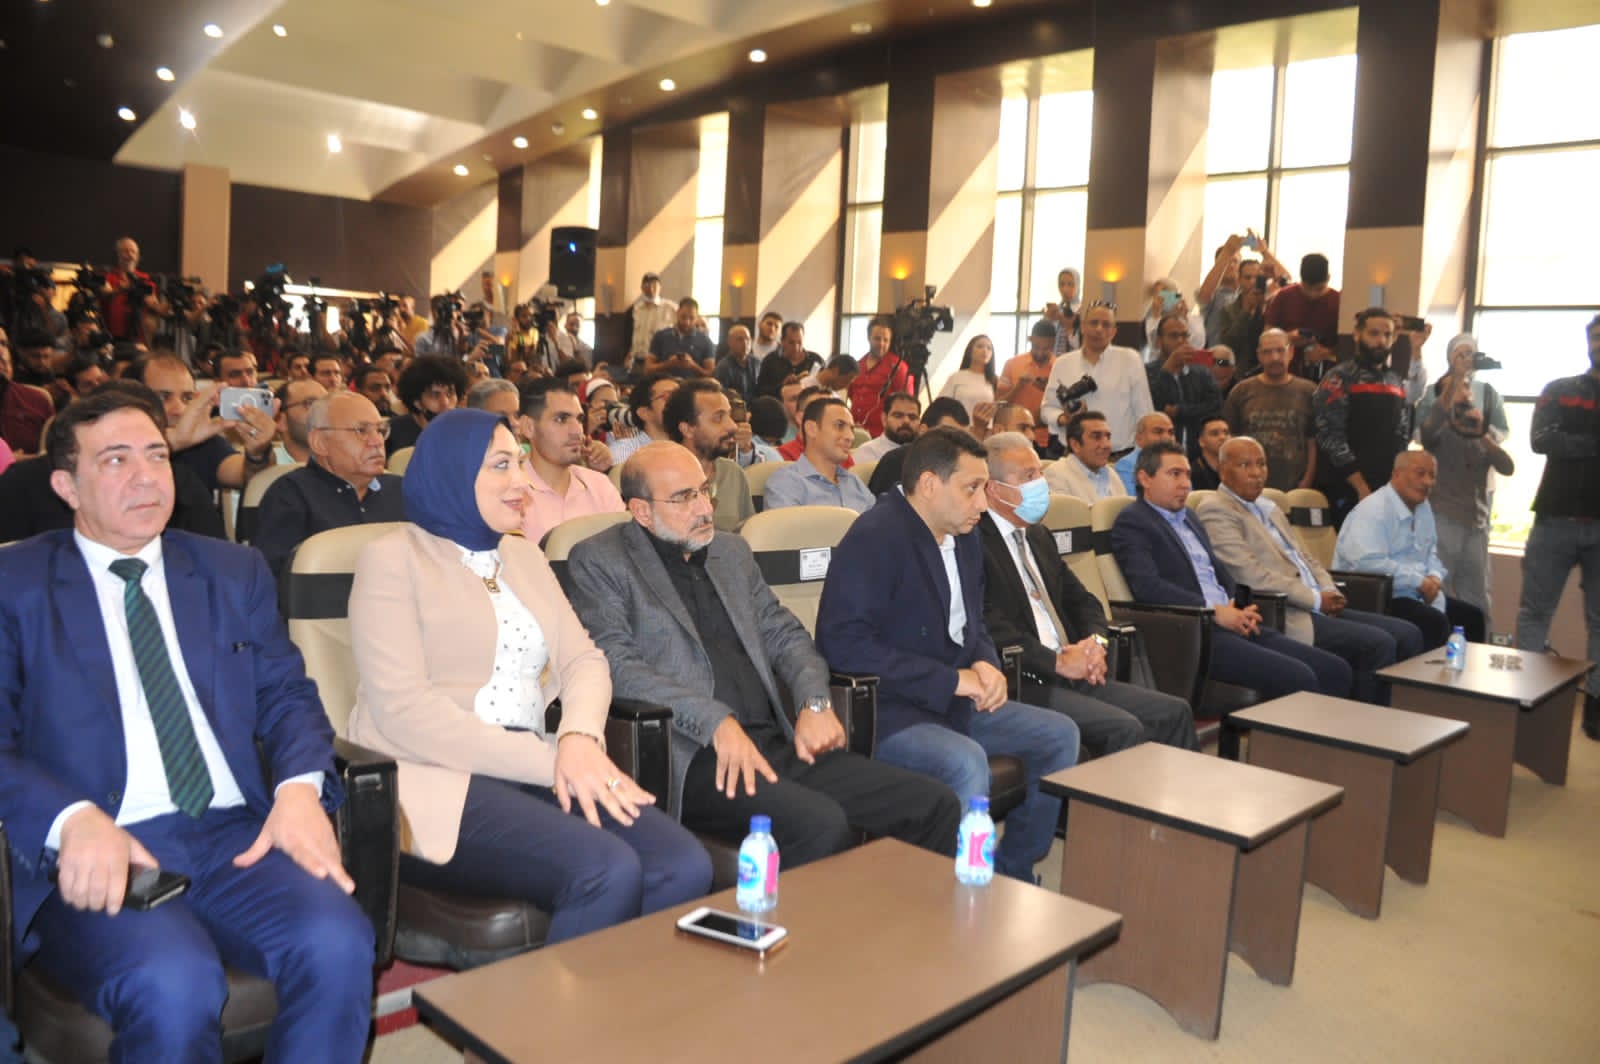 المؤتمر الصحفي لتقديم إيهاب جلال مدرب المنتخب الوطني الأول 